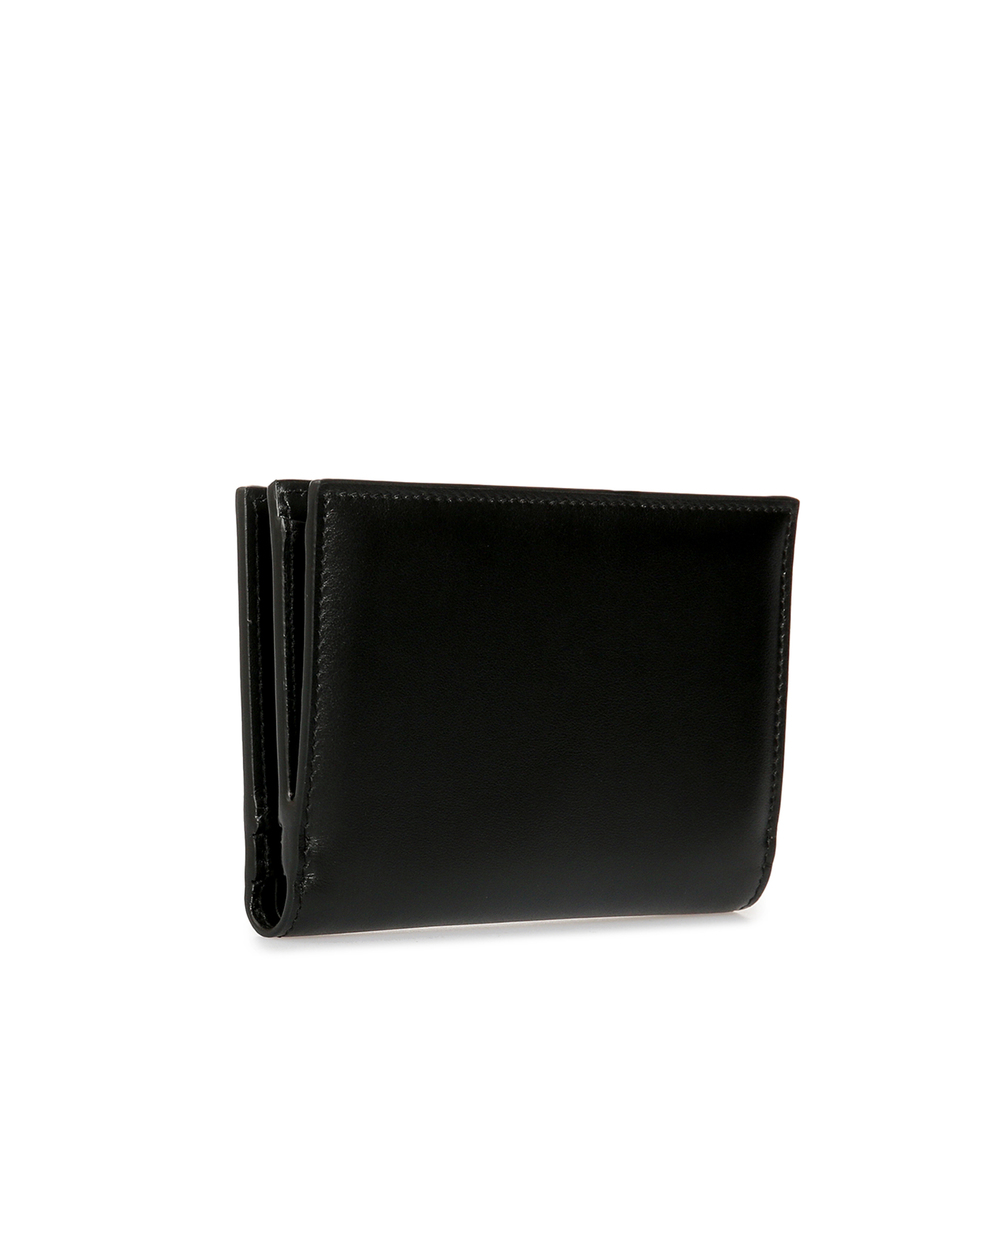 Кожаный кошелек Dolce&Gabbana BI2697-AX121, черный цвет • Купить в интернет-магазине Kameron